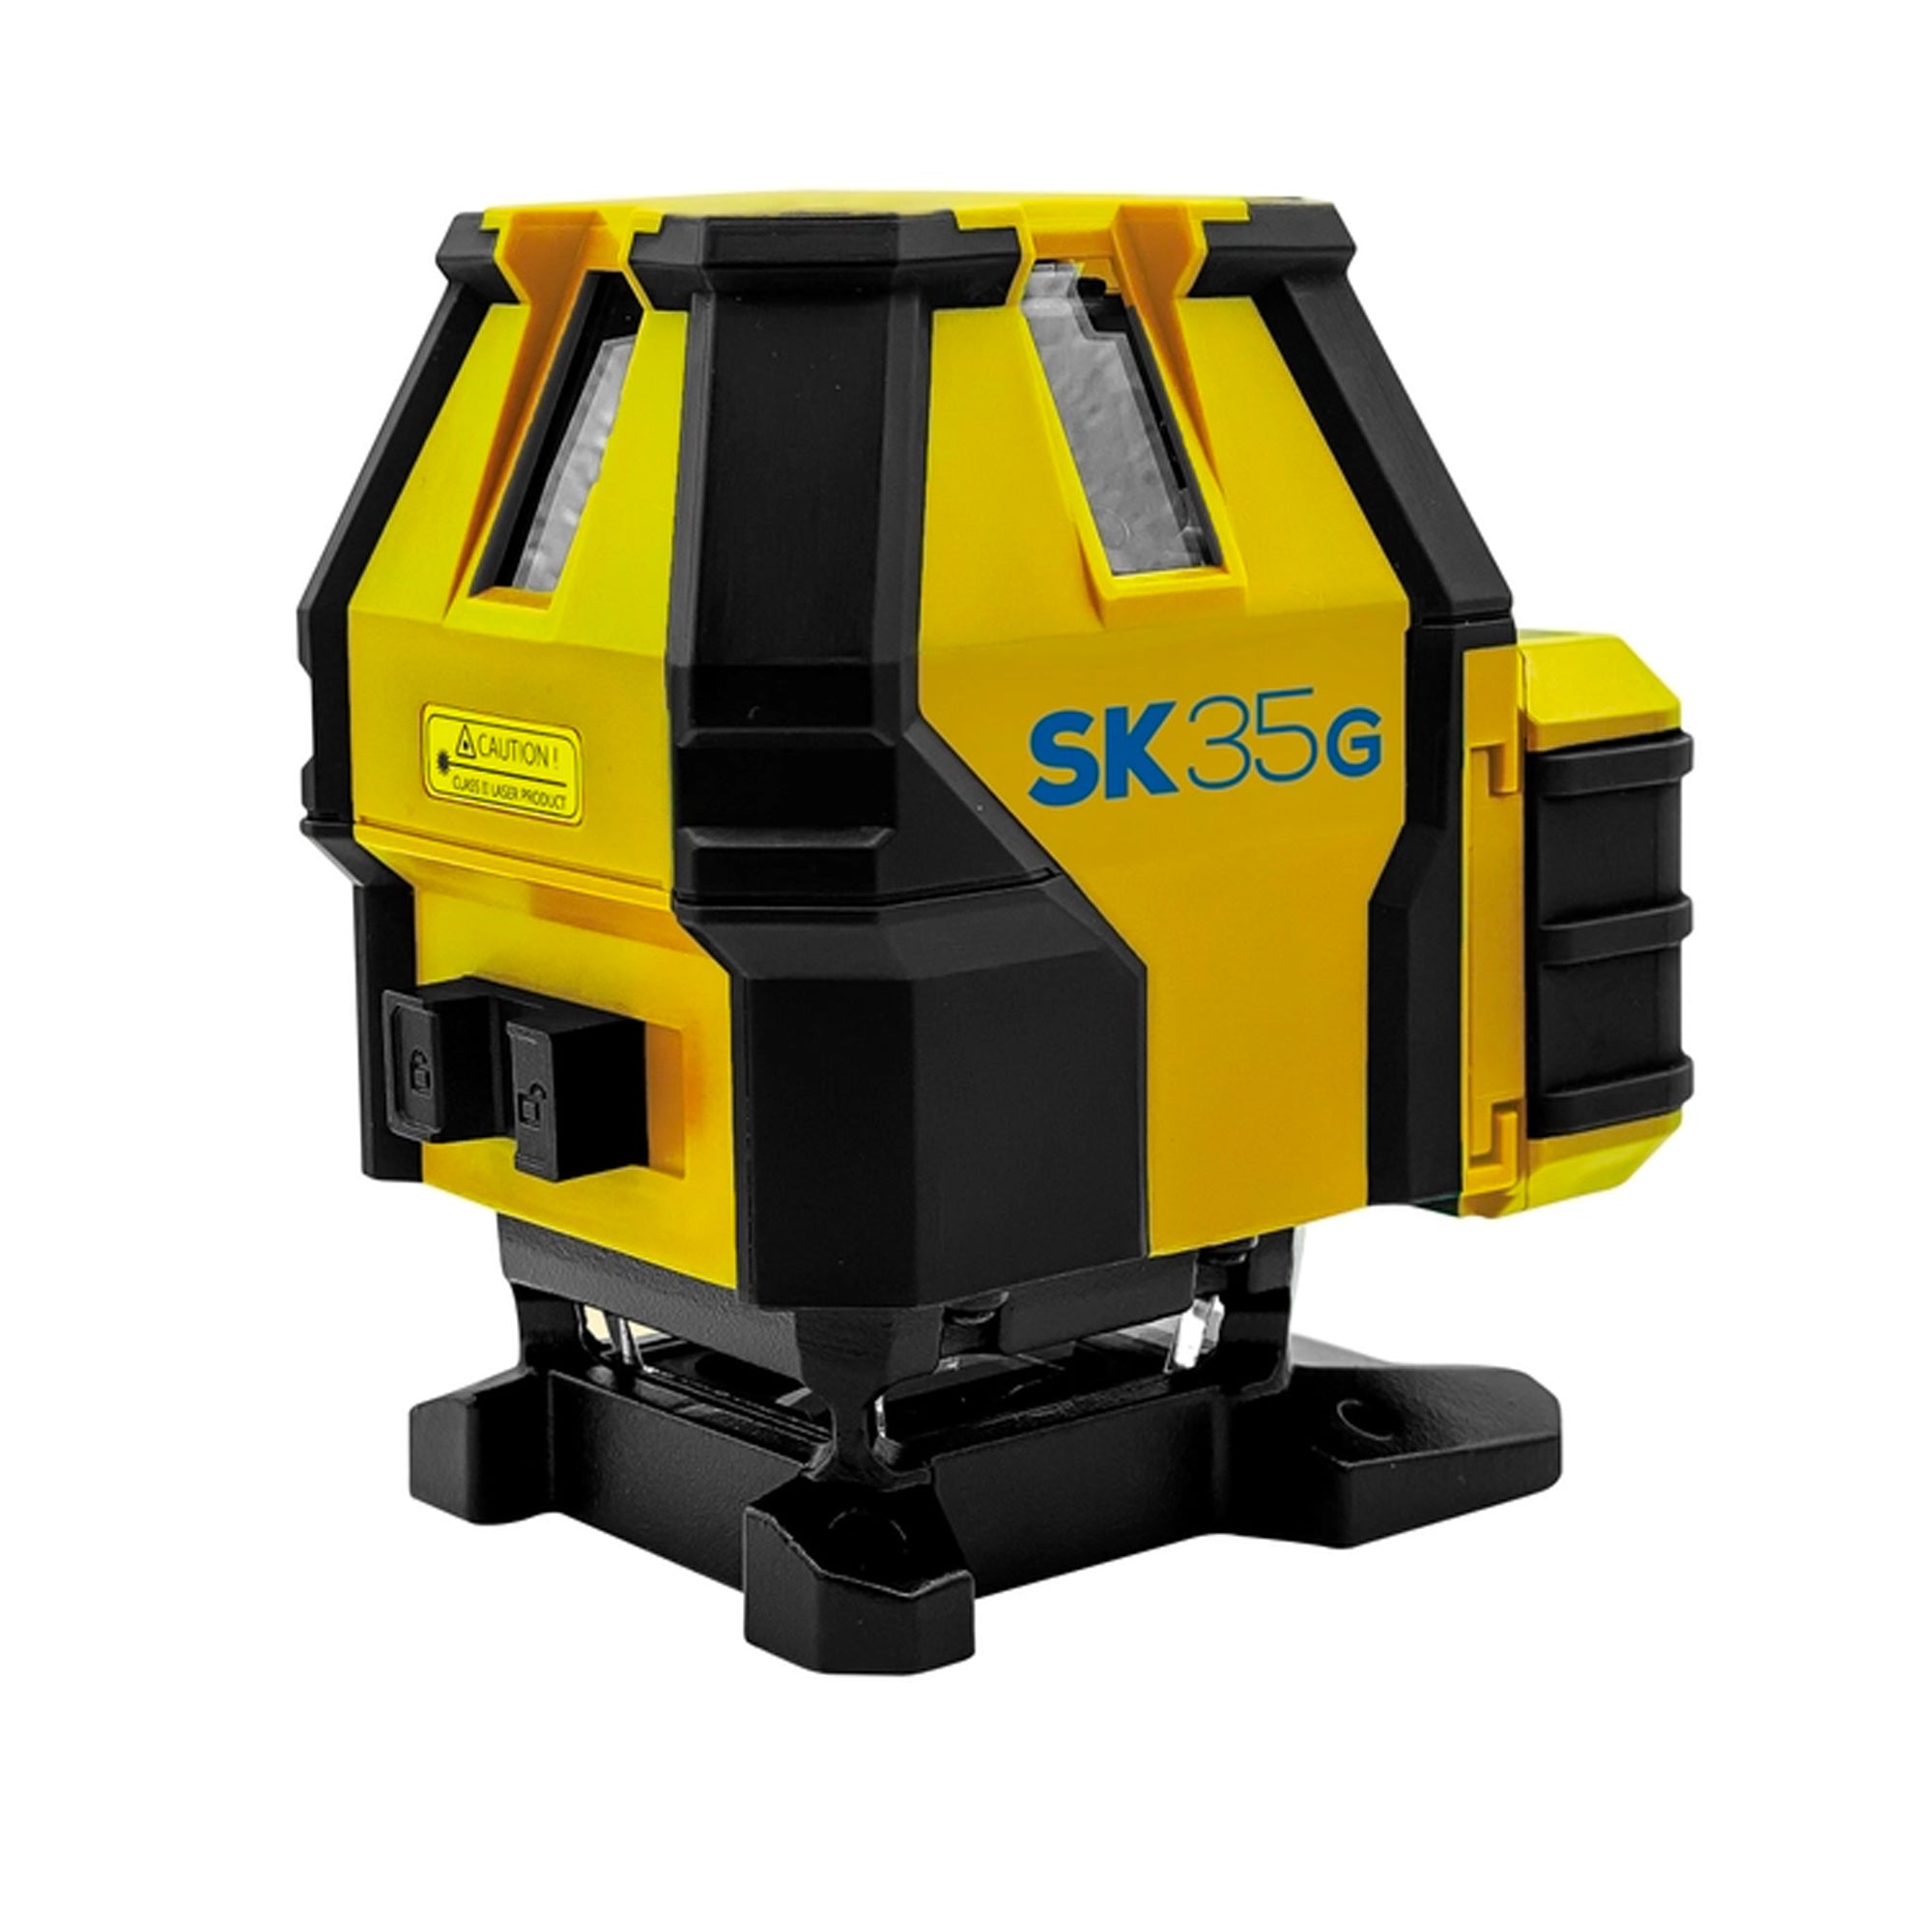 Tracciatore laser Spektra SK35G